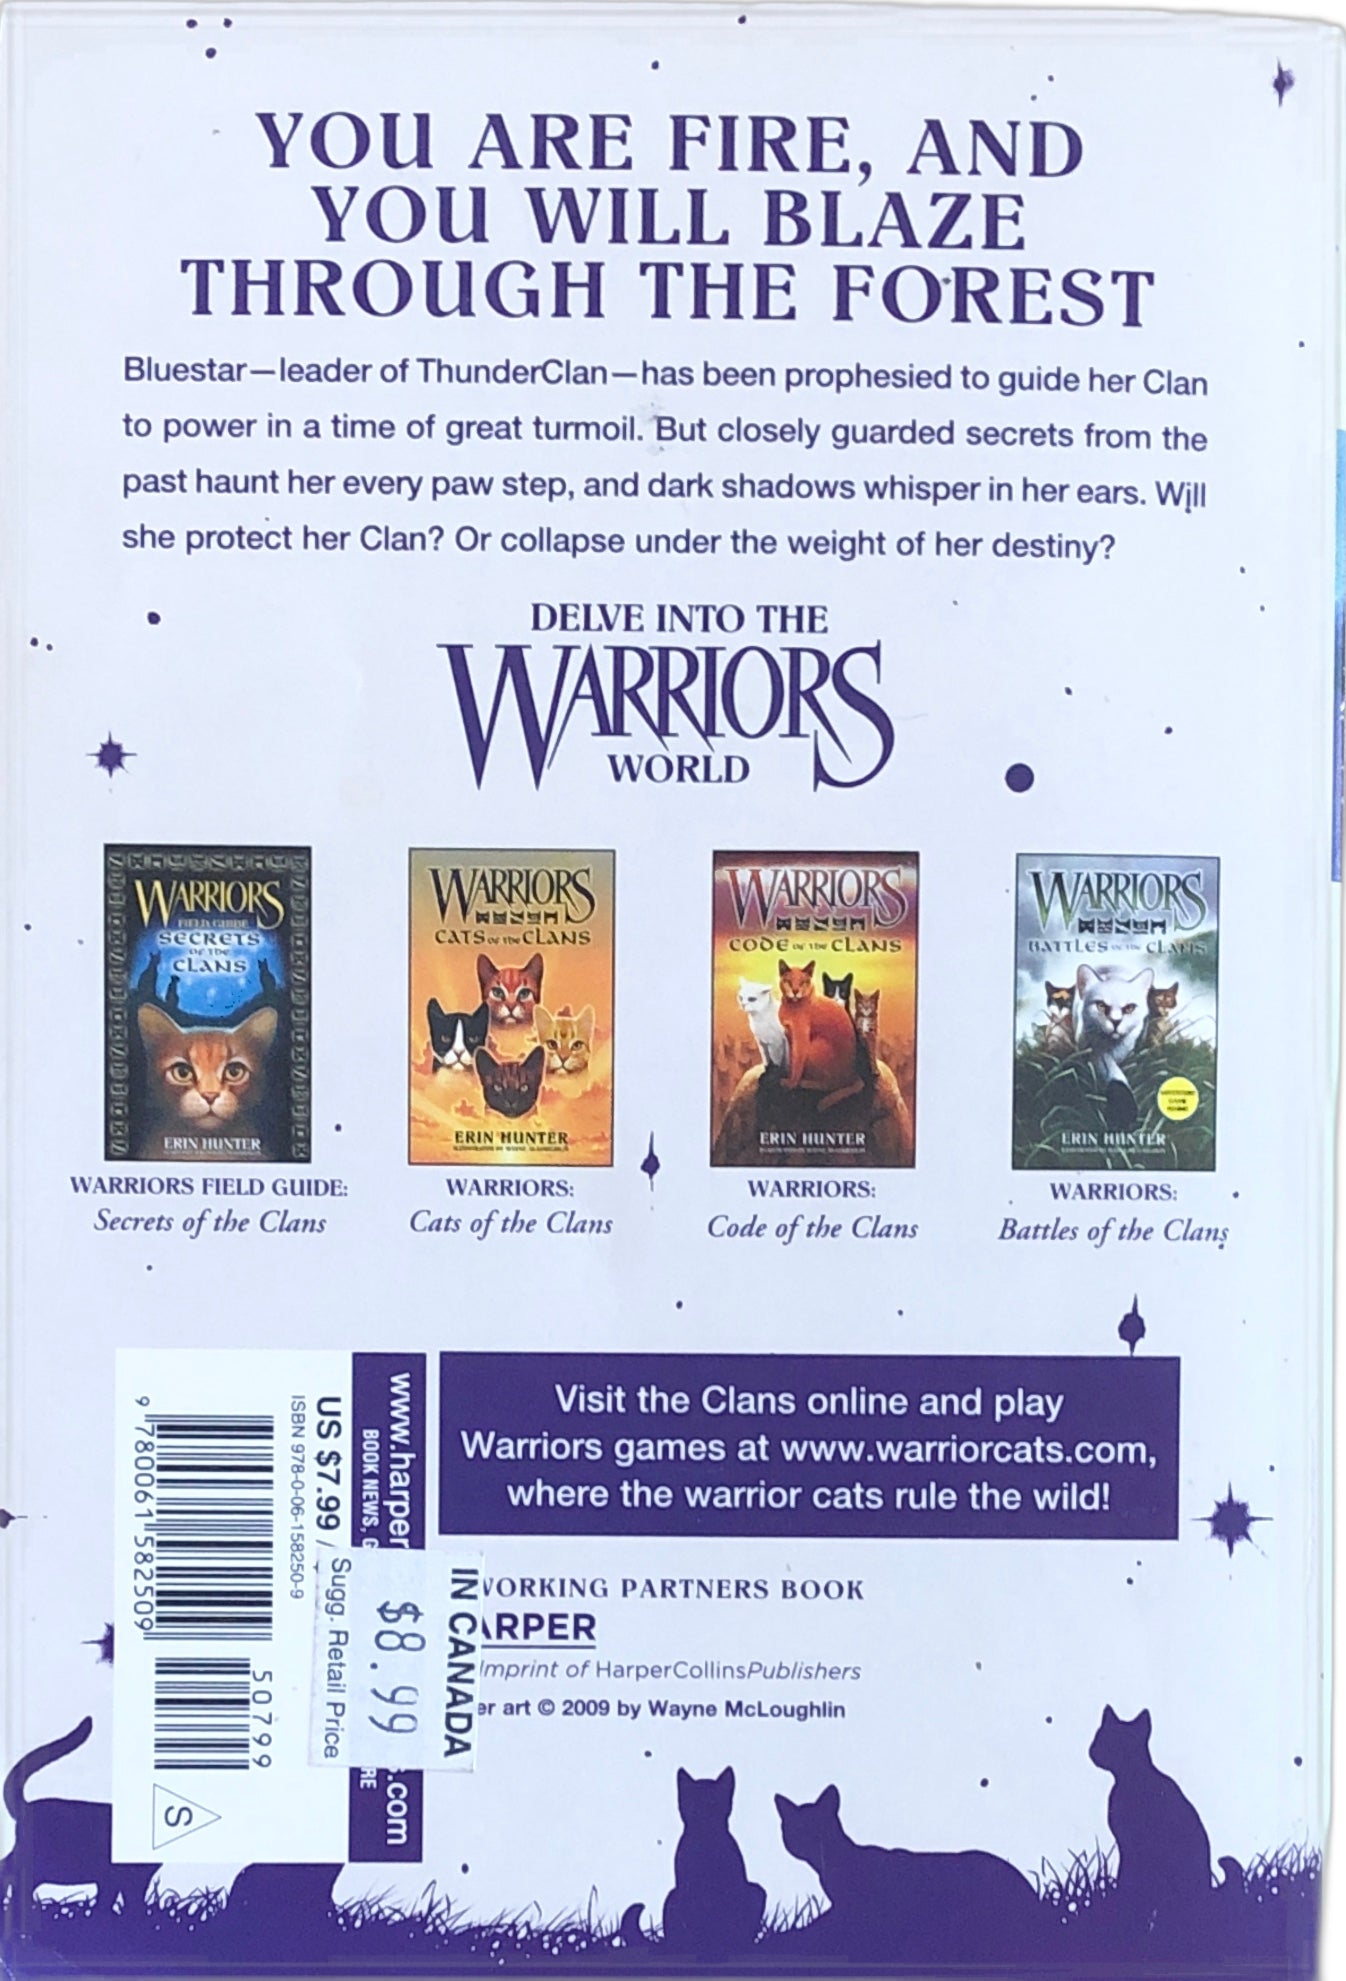 Warriors: Firestar's Quest (Super Edition) by Erin Hunter – nerdnookbooks